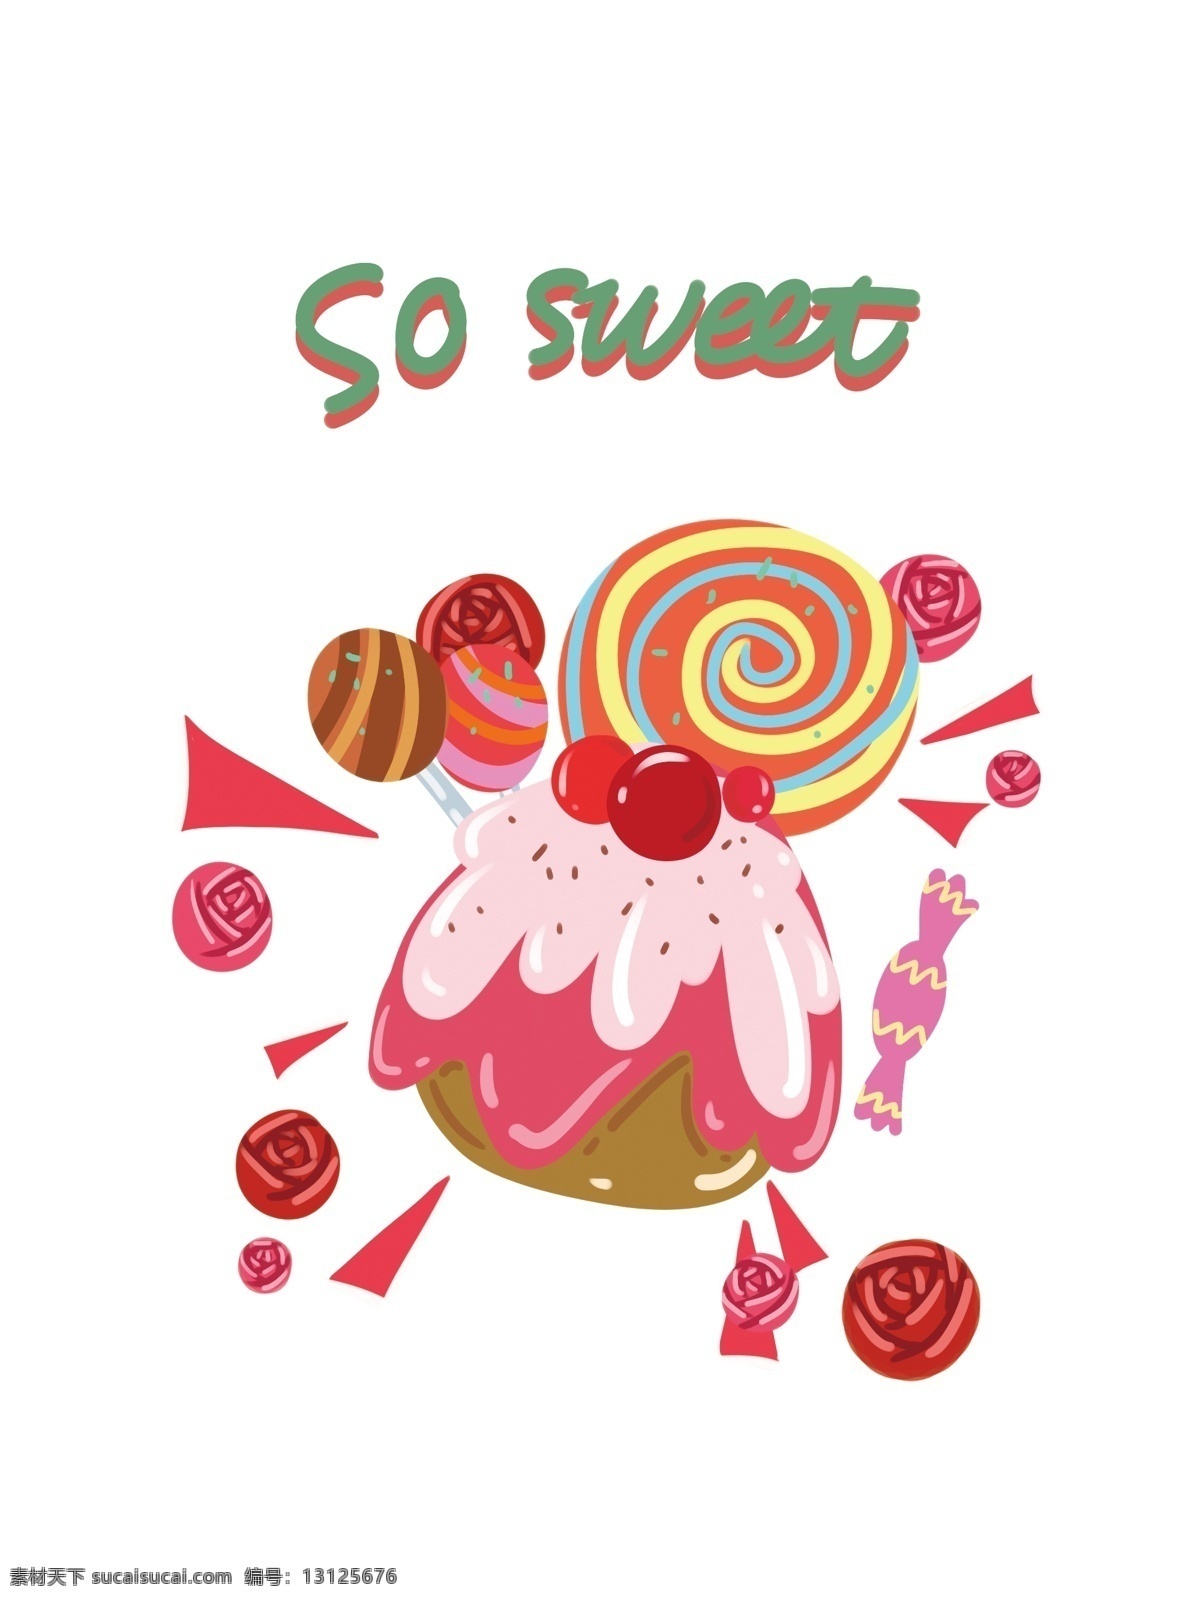 帆布 袋 包装 甜品 下午 茶 系列 可爱 卡通 帆布袋 下午茶 蛋糕 棒棒糖 糖 文案 粉红 小清新